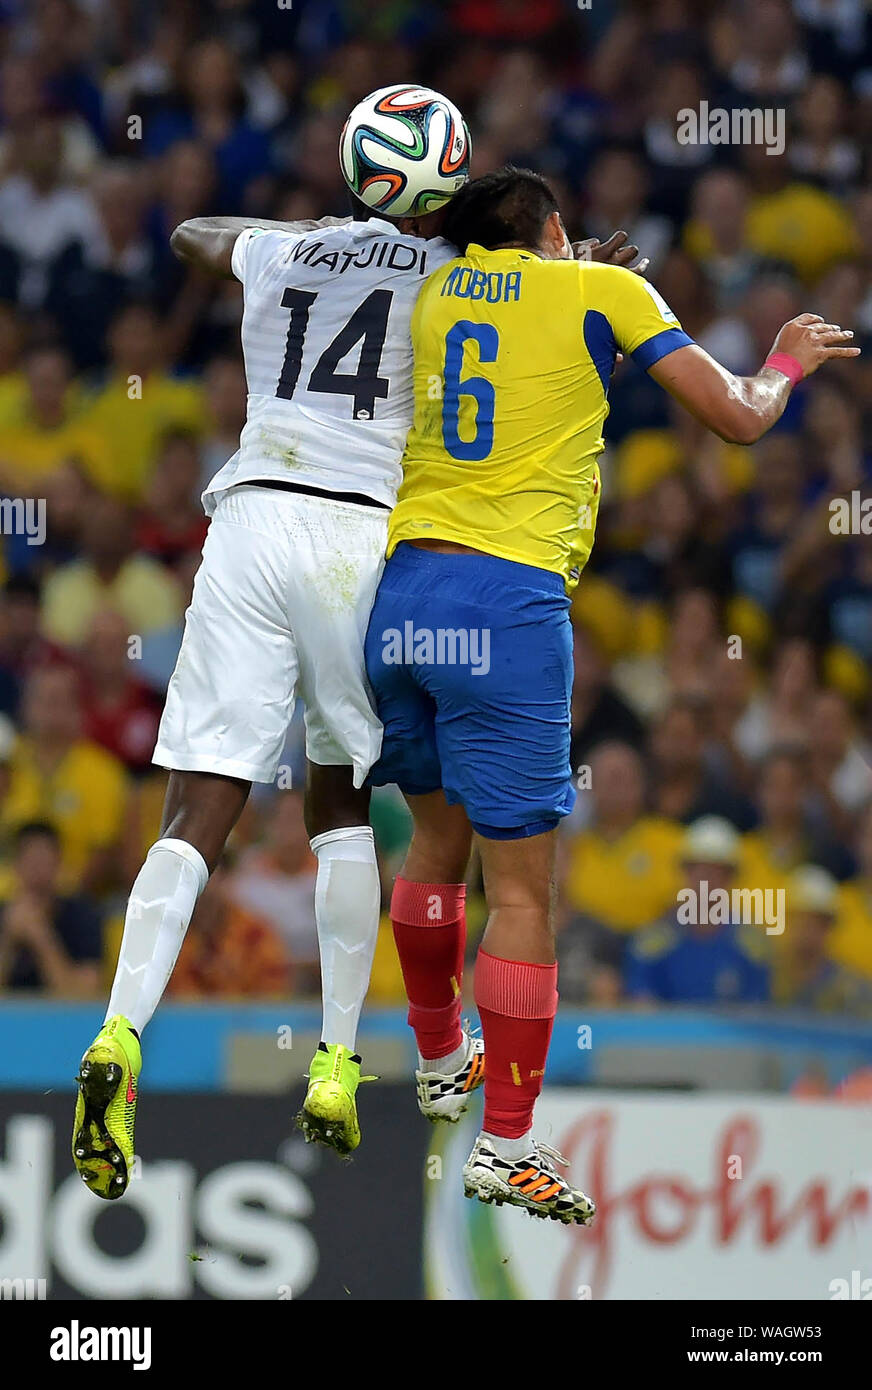 Rio de Janeiro, le 25 juin 2014. Les joueurs de football Matuidi et Noboa concourent pour le ballon lors du match de football Equateur-France pour la coupe du monde 2014 a Banque D'Images